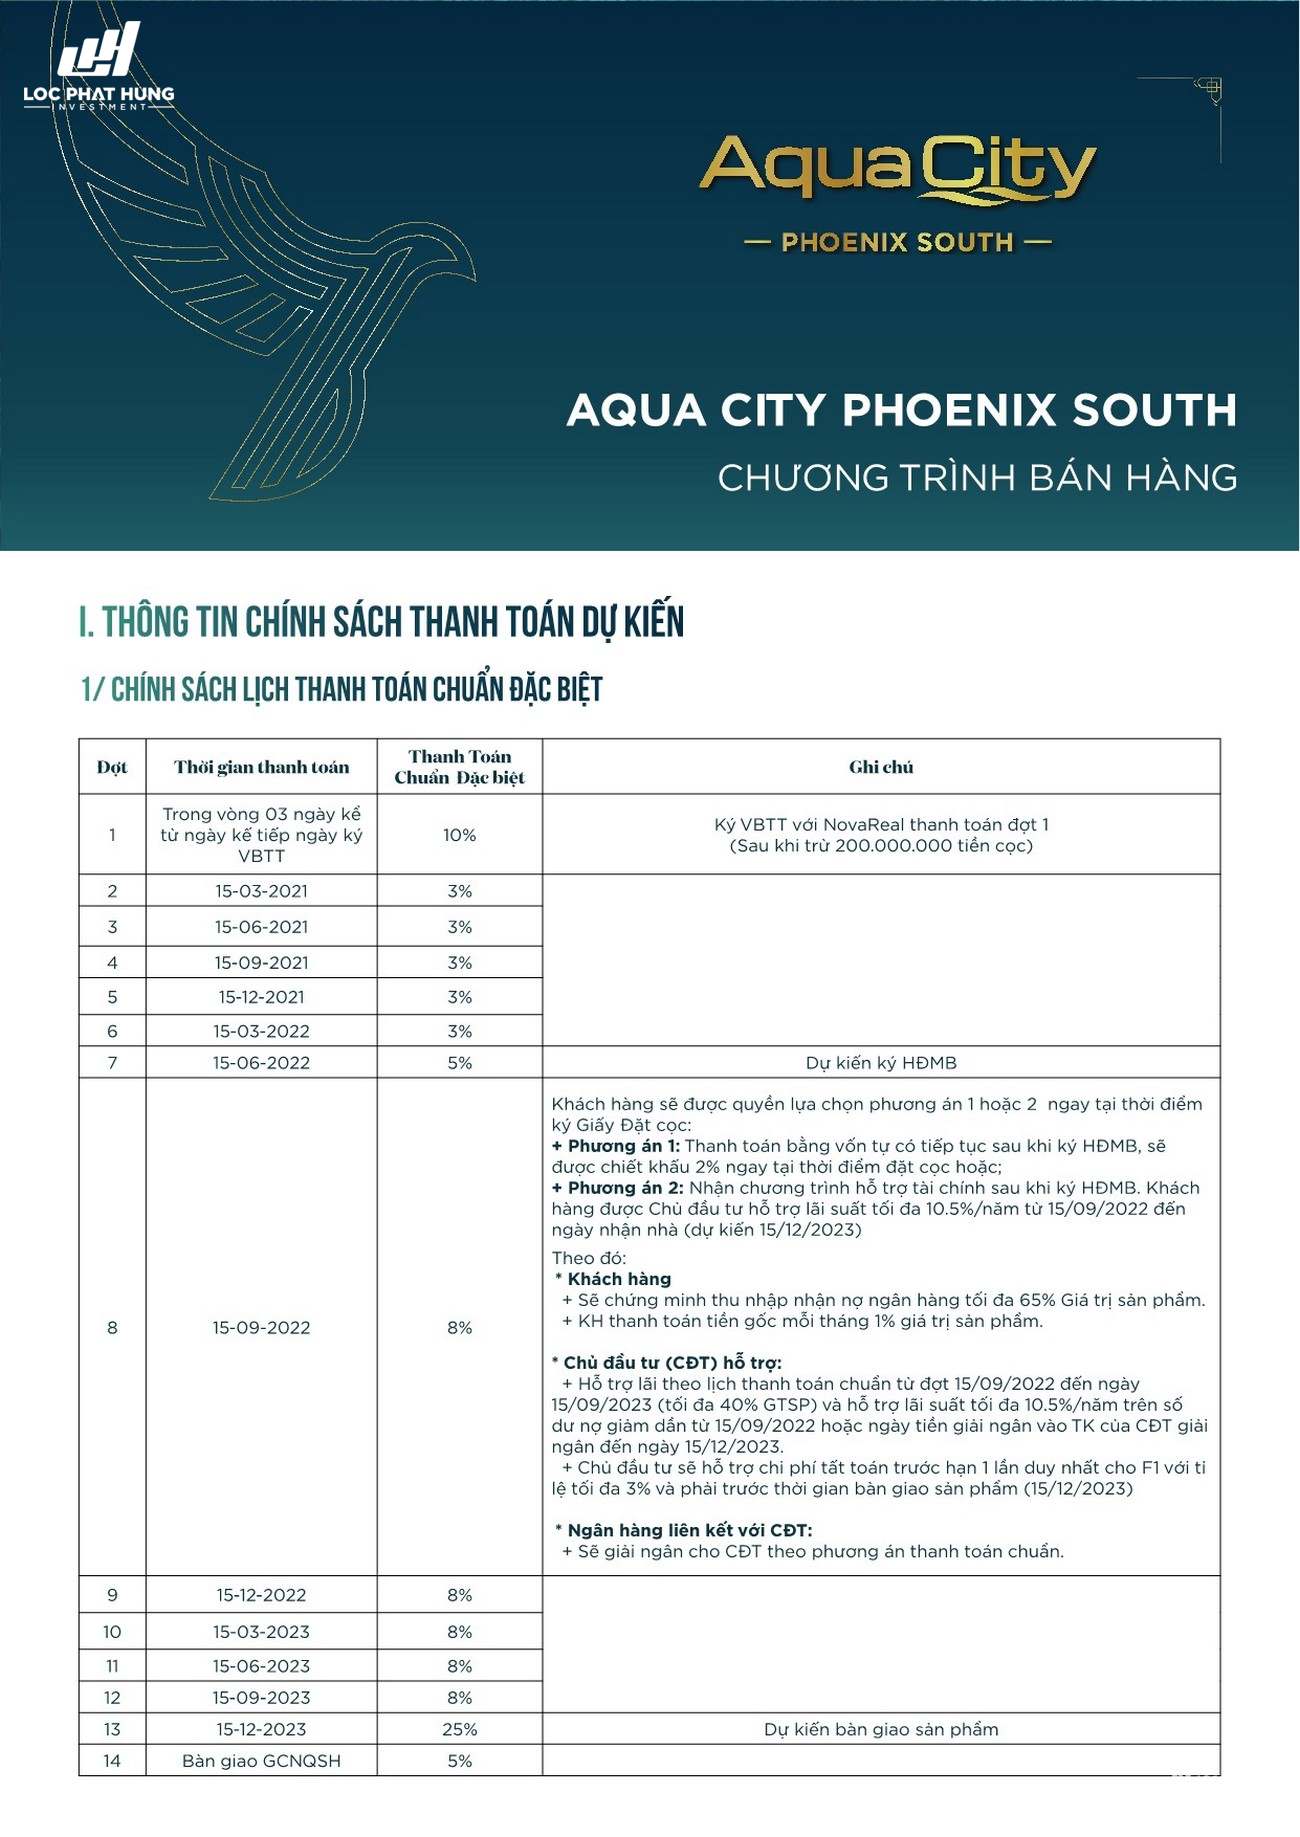 Chương trình bán hàng dự án nhà phố Aqua City The Phoenix South